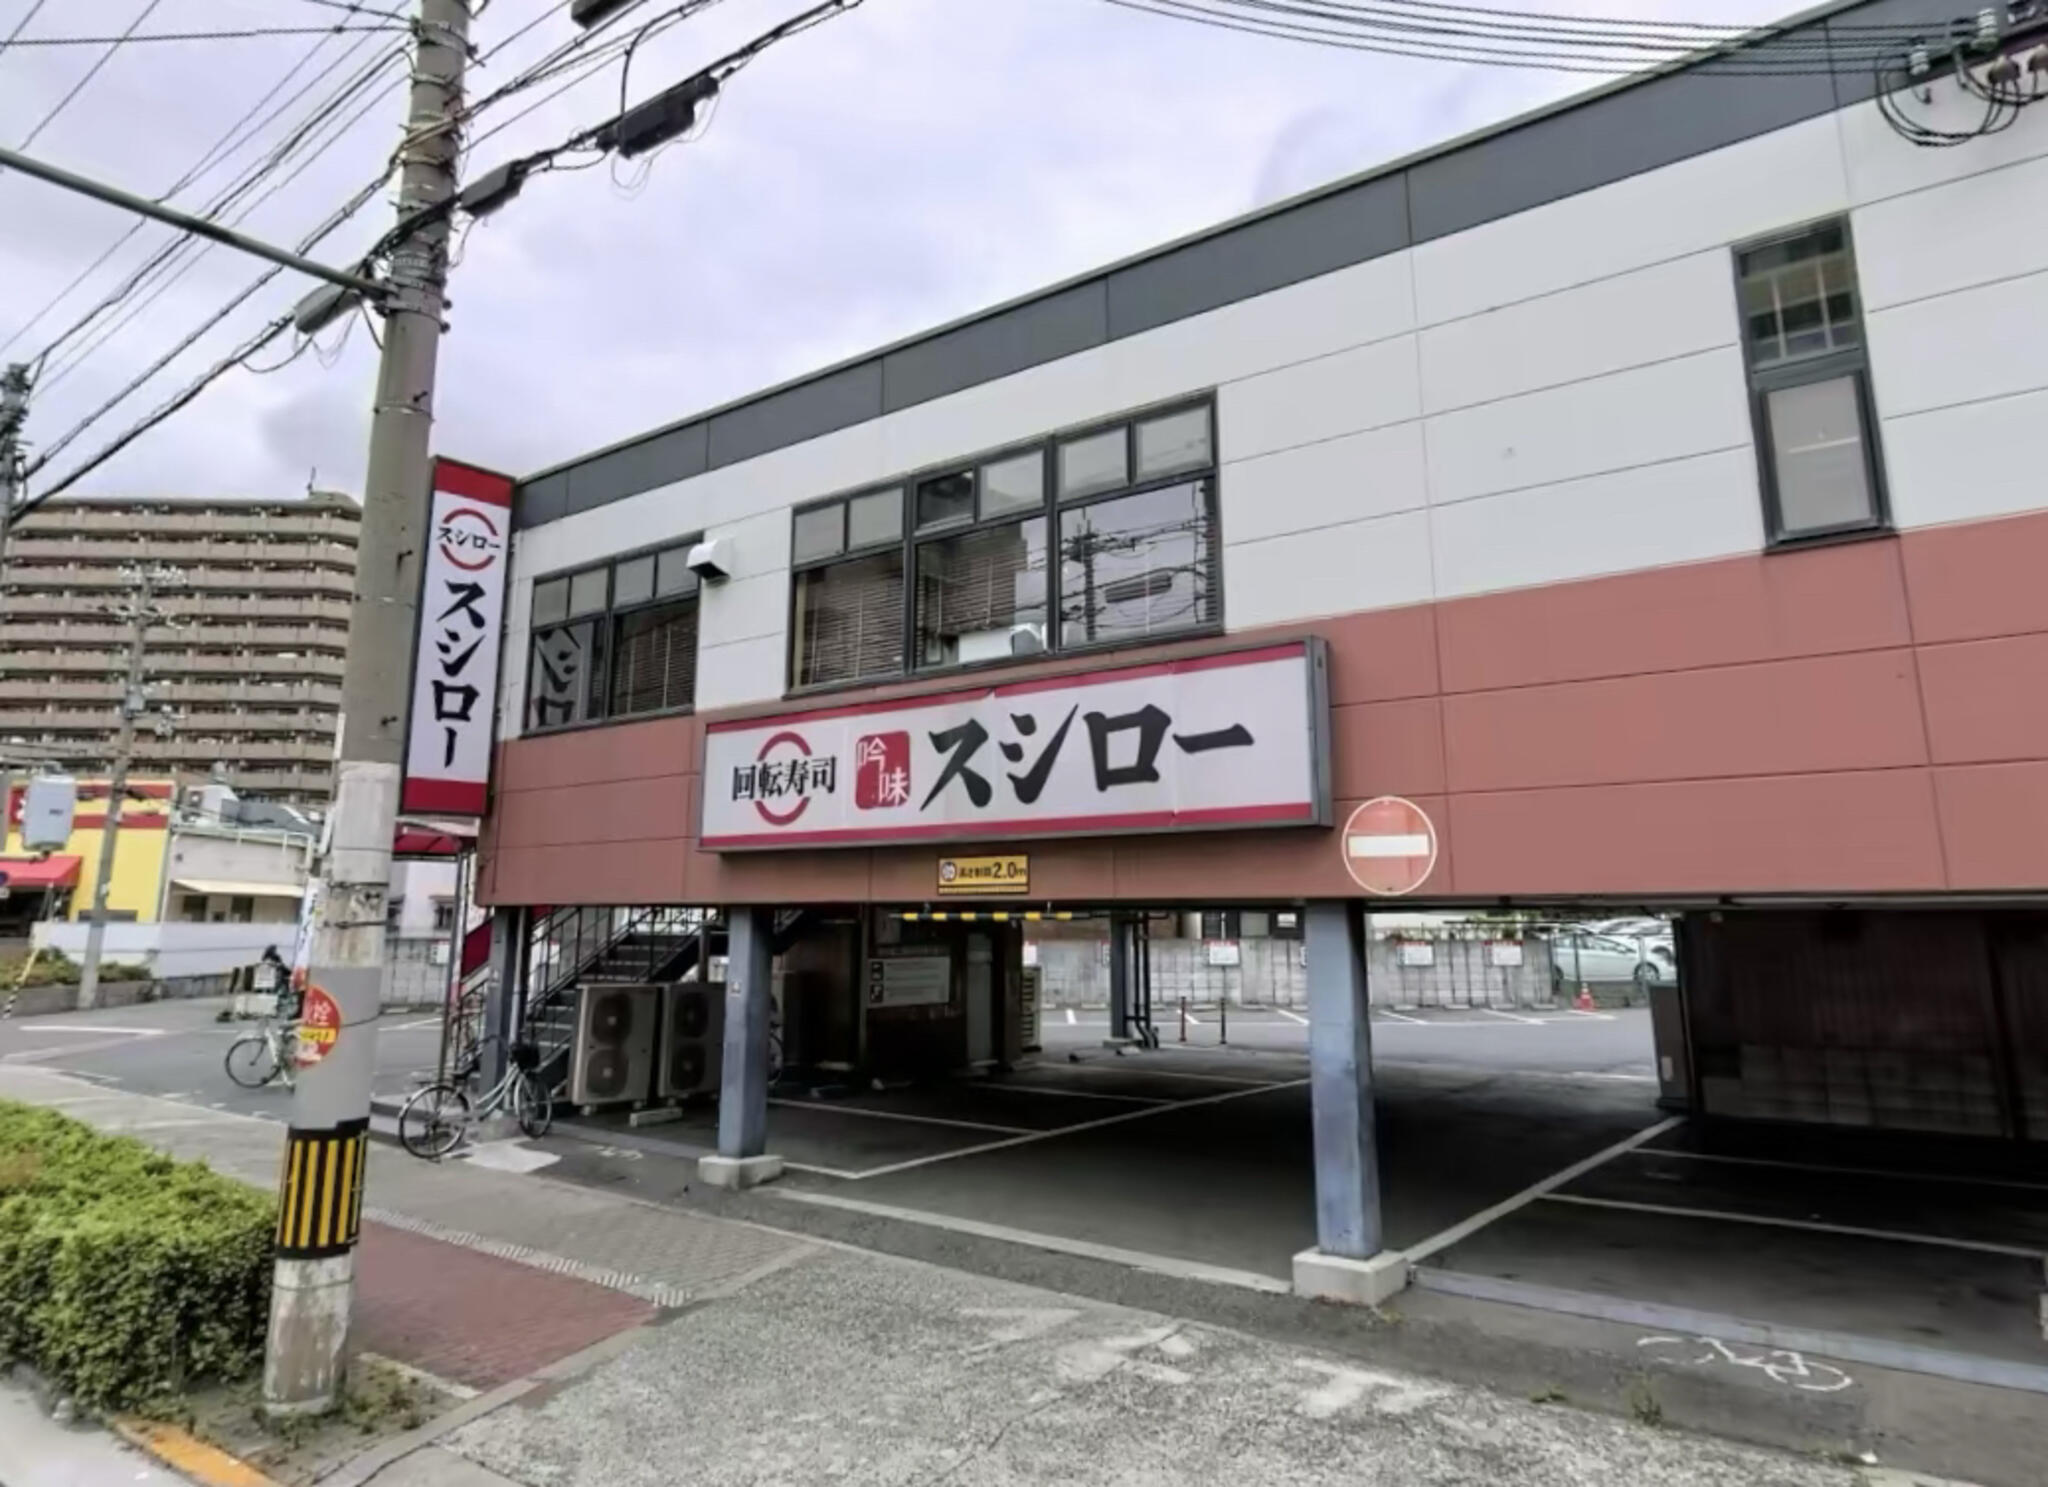 スシロー 歌島店 - 大阪市西淀川区歌島/回転寿司店 | Yahoo!マップ